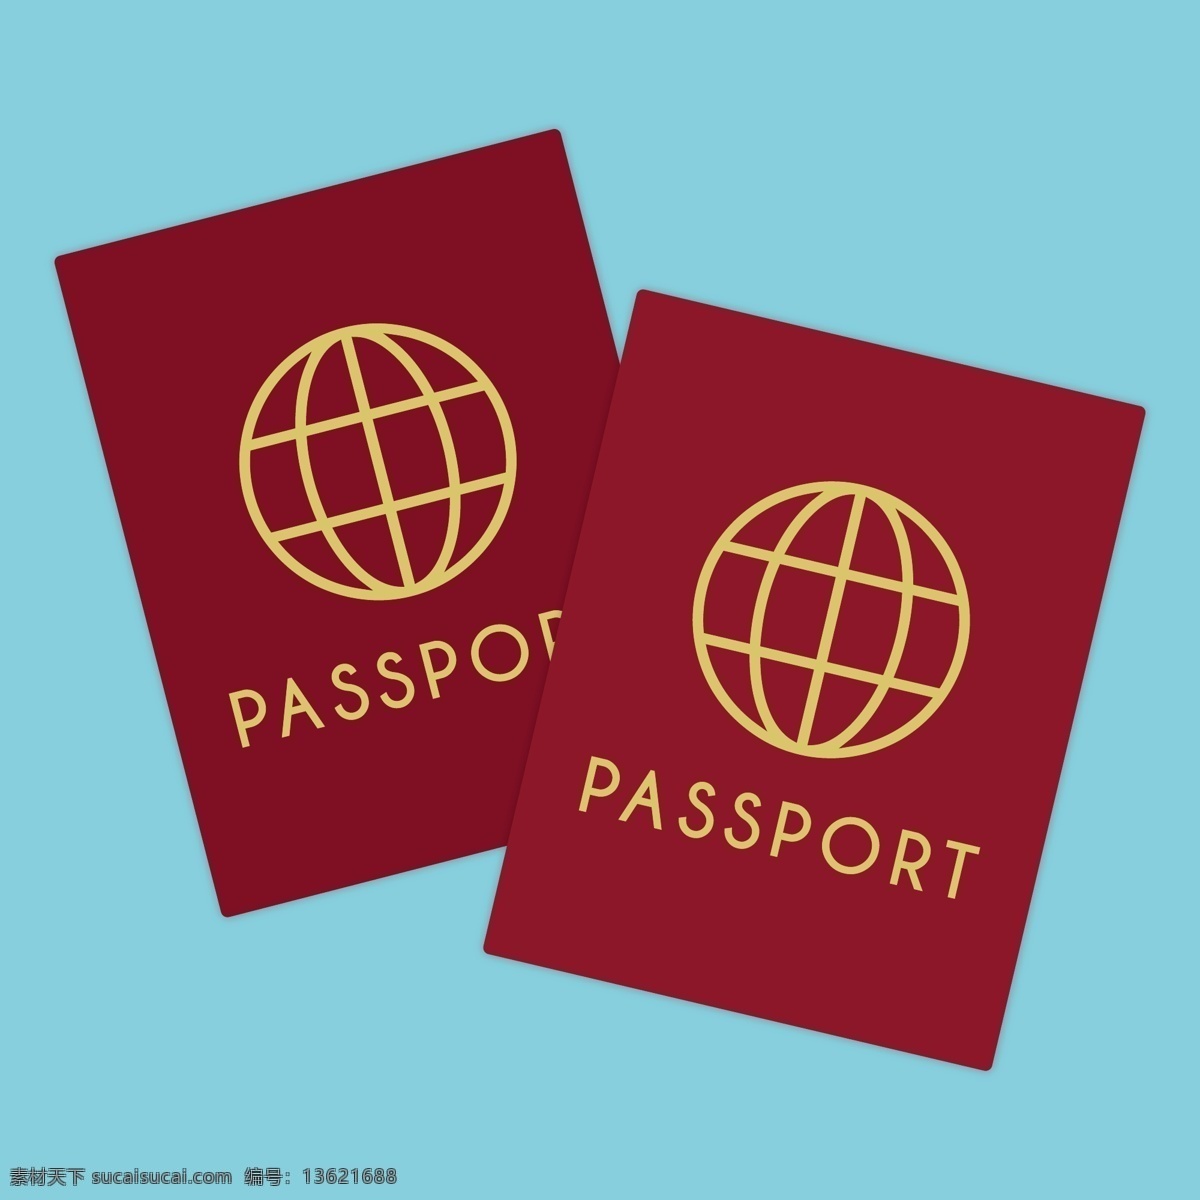 卡通 护照 矢量 卡通护照 矢量素材 卡通素材 矢量图